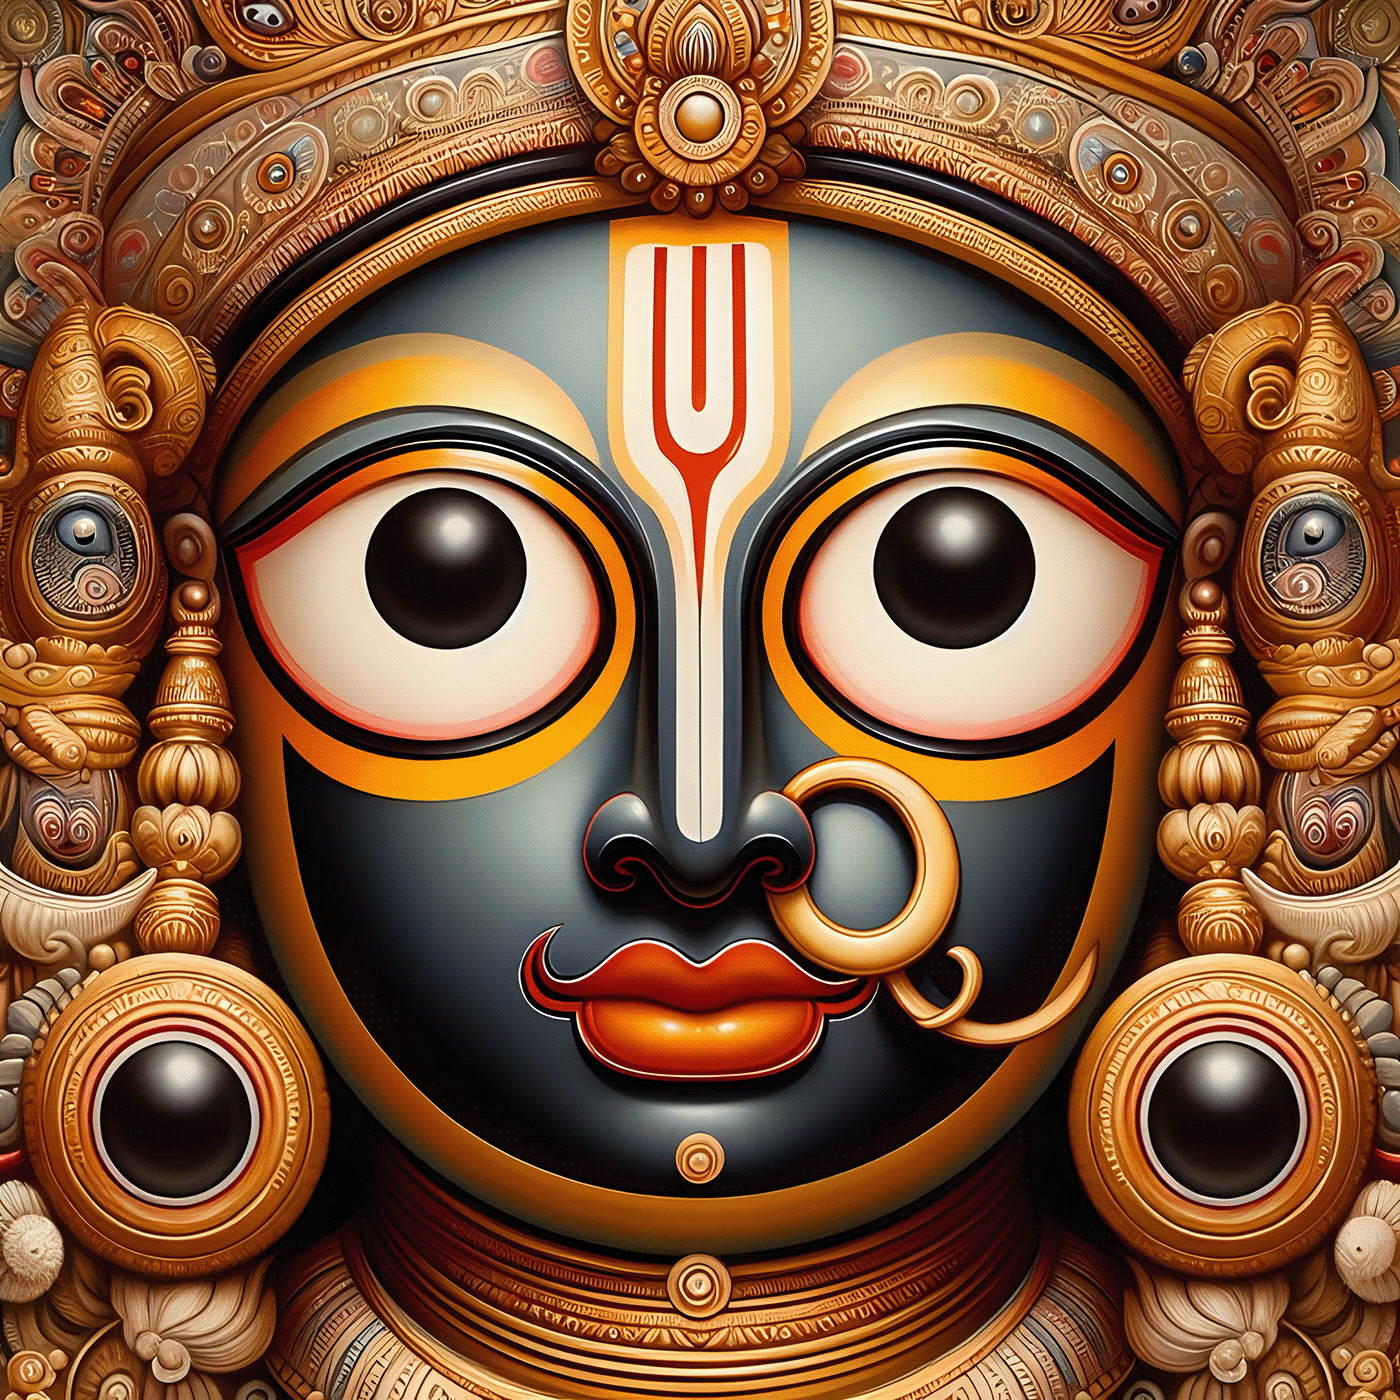 Puri jagannath   Hindu God vishnu Odisha